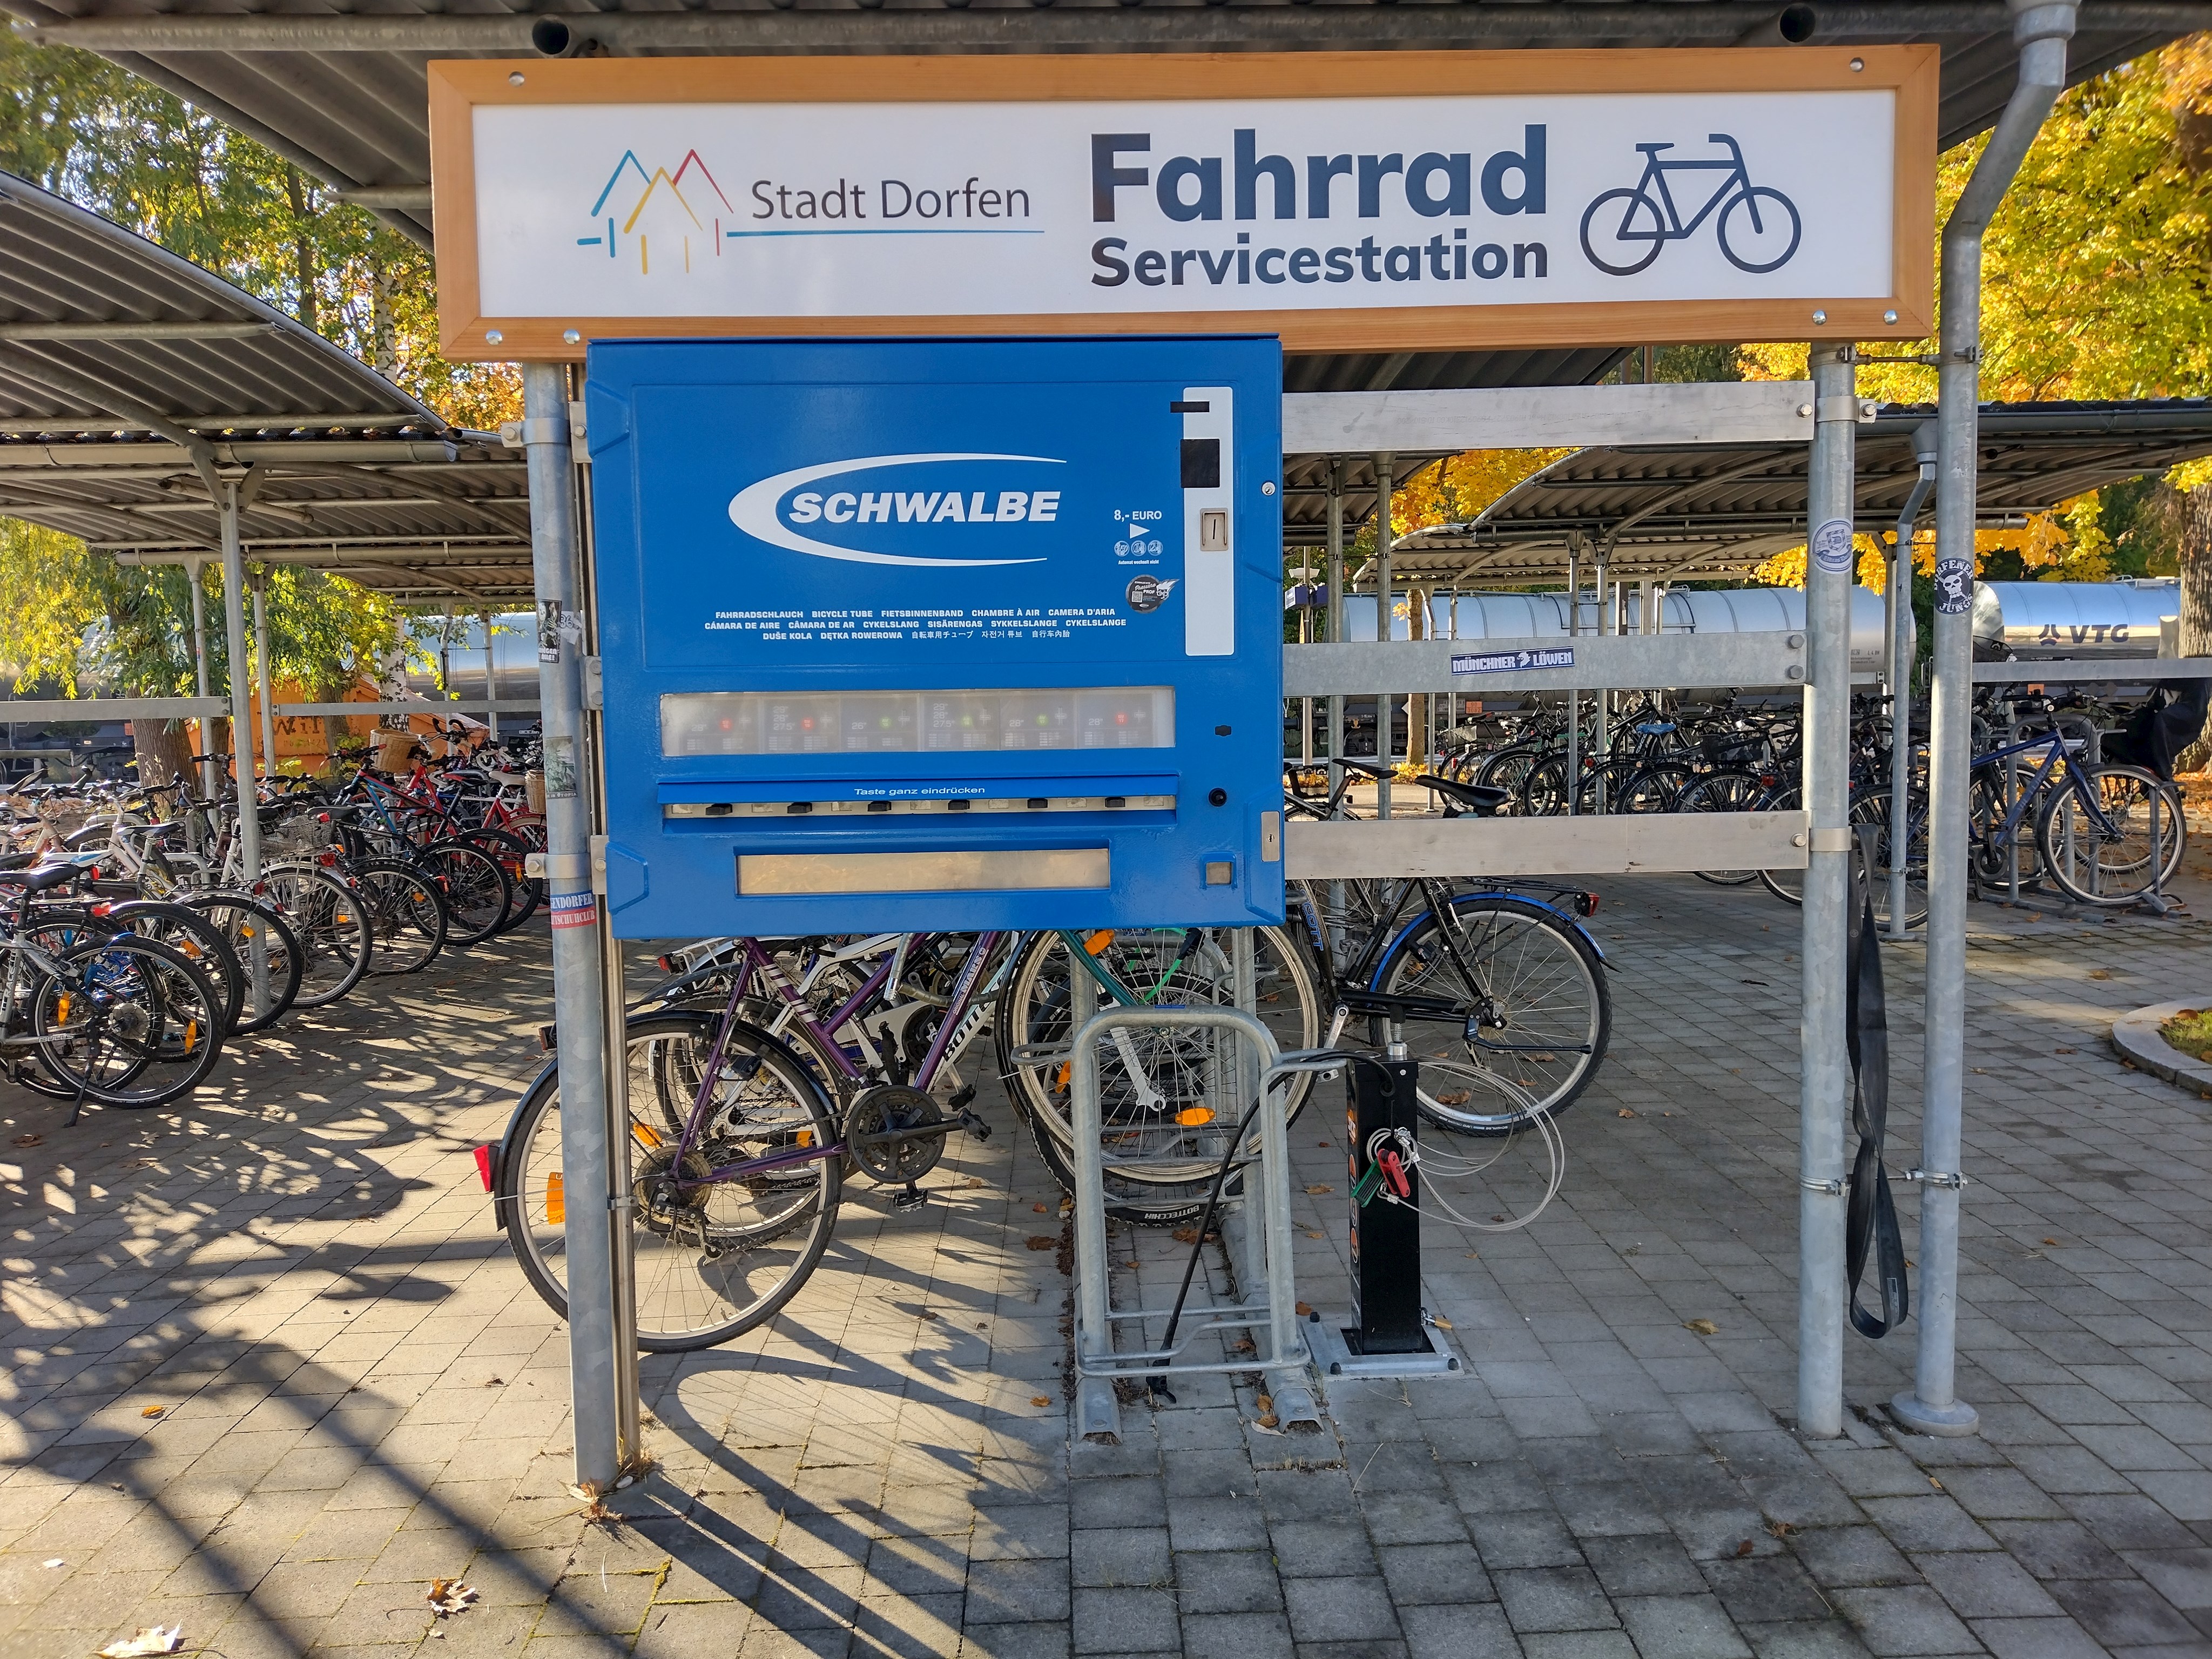 Fahrrad Servicestation